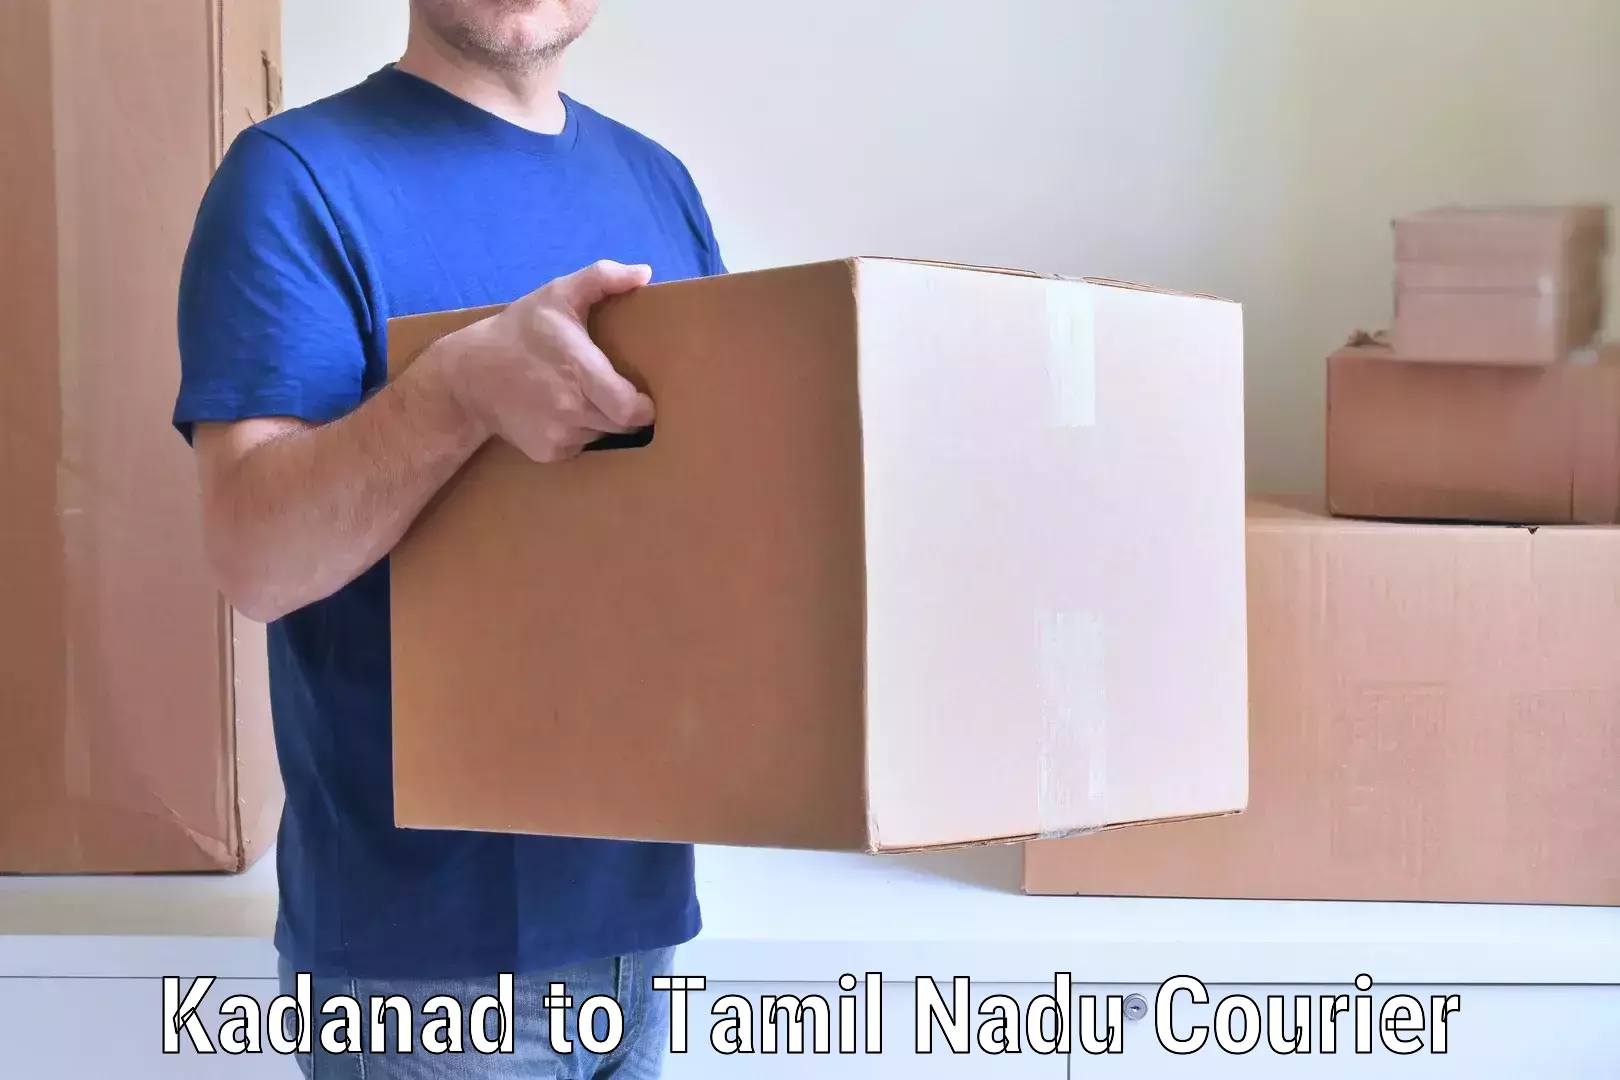 Home moving specialists Kadanad to Thiruvadanai